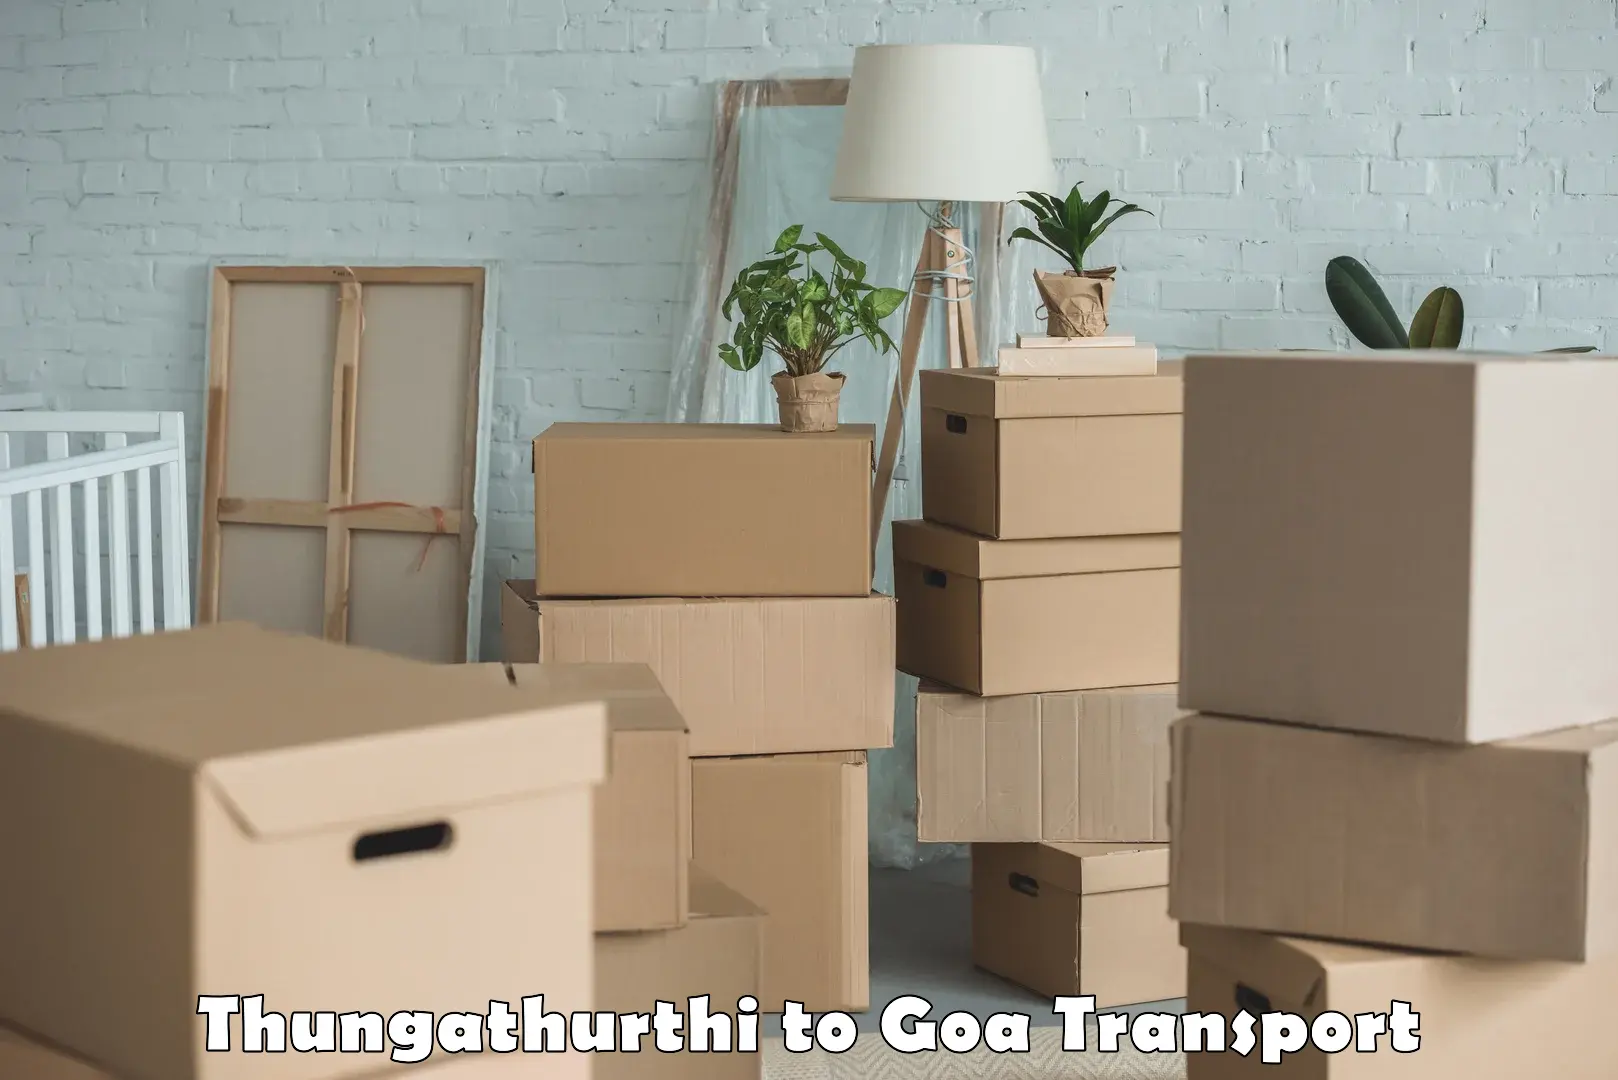 Daily parcel service transport Thungathurthi to Canacona